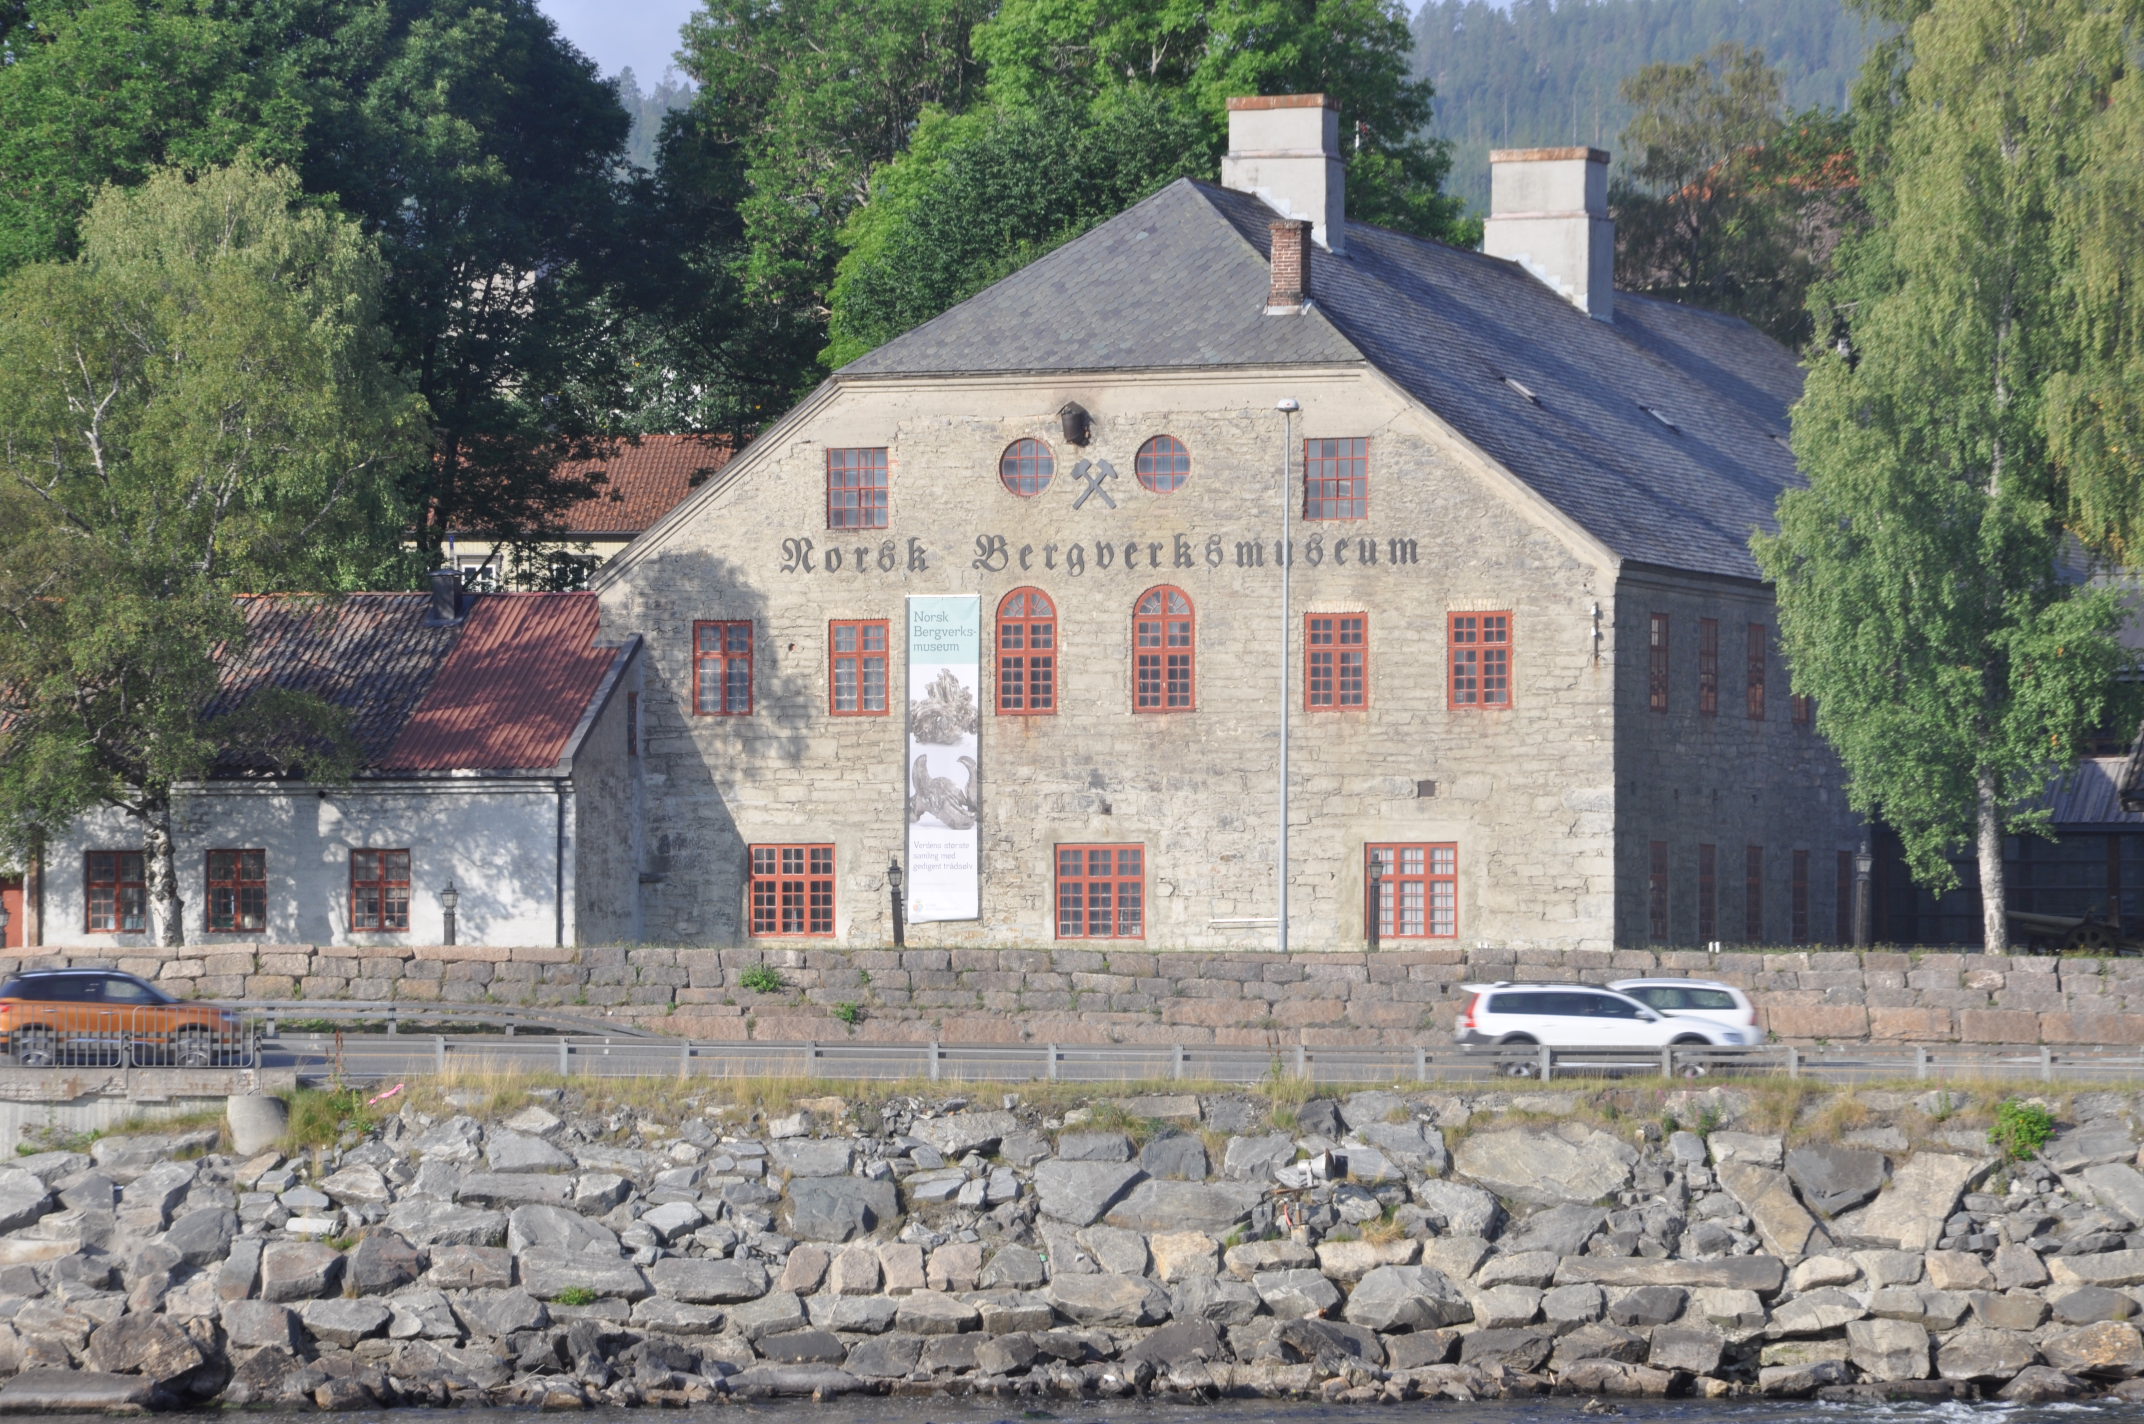 Norsk Bergverksmuseum i Sølvverkets smeltehytte fra 1844. Museet bleåpnet i 1945. (Foto: Kjell Wold)